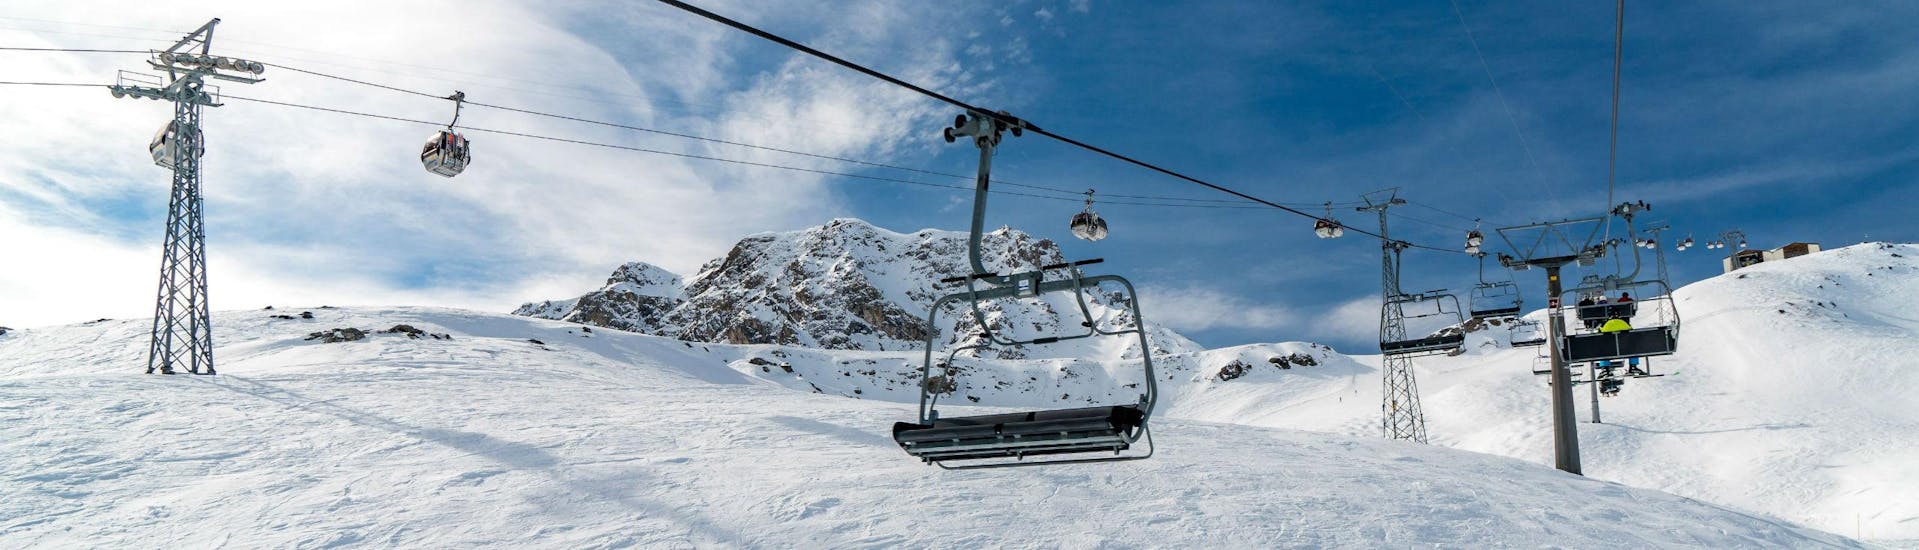 Vue sur un télésiège et une télécabine dans la station de ski suisse d'Arosa, où les écoles de ski locales proposent des cours de ski pour tous ceux qui veulent apprendre à skier.